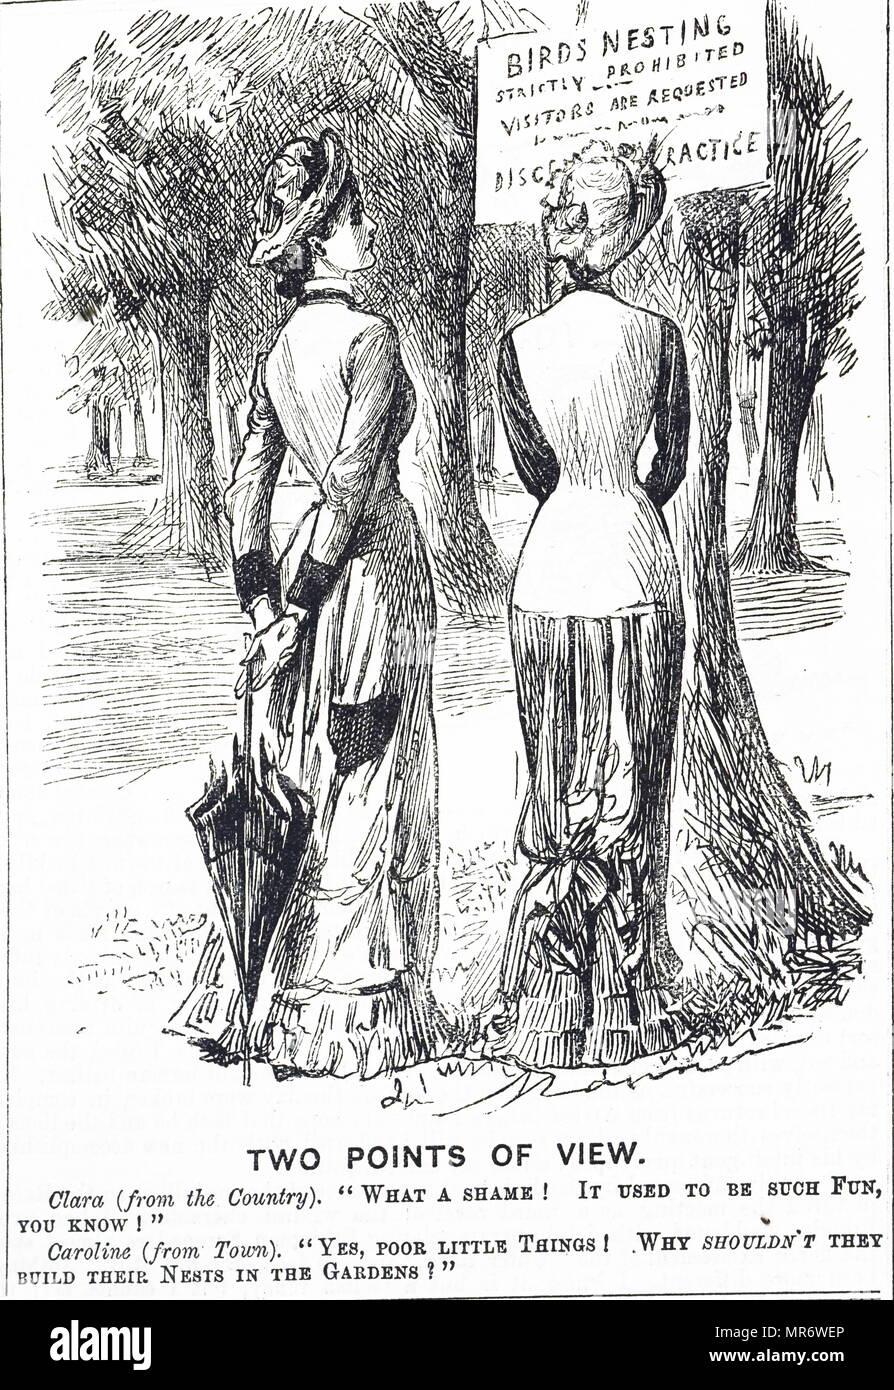 Cartoon in Bezug auf den Schutz von Vögeln Act 1880. Mit Ill. von George Du Maurier (1834-1896) eine französisch-britische Zeichner und Autor. Vom 19. Jahrhundert Stockfoto